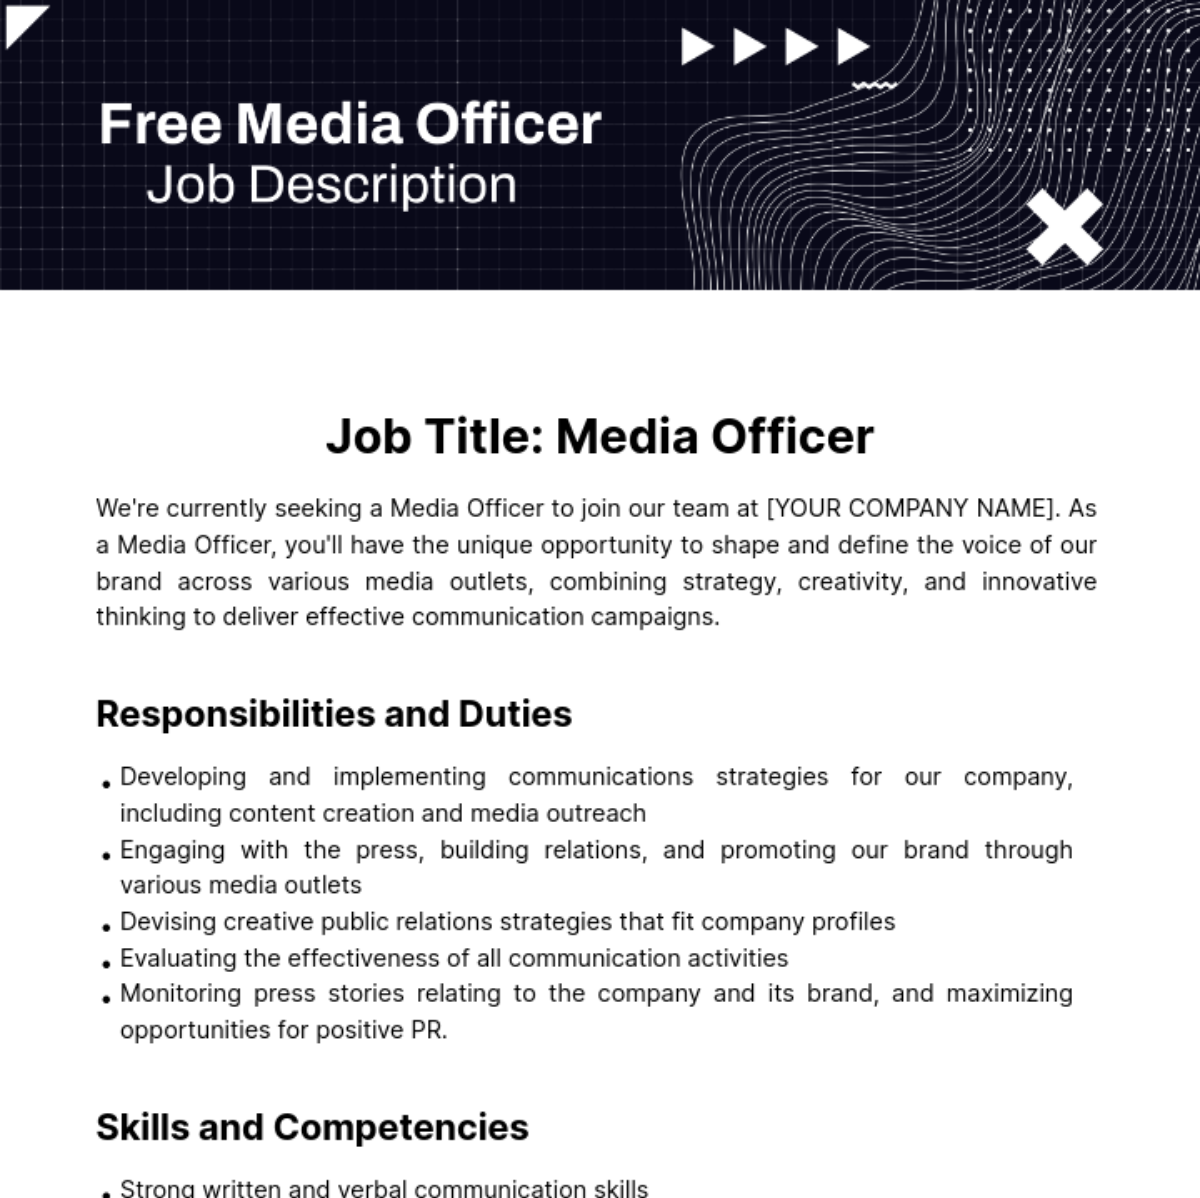 Free Media Officer Job Description Template